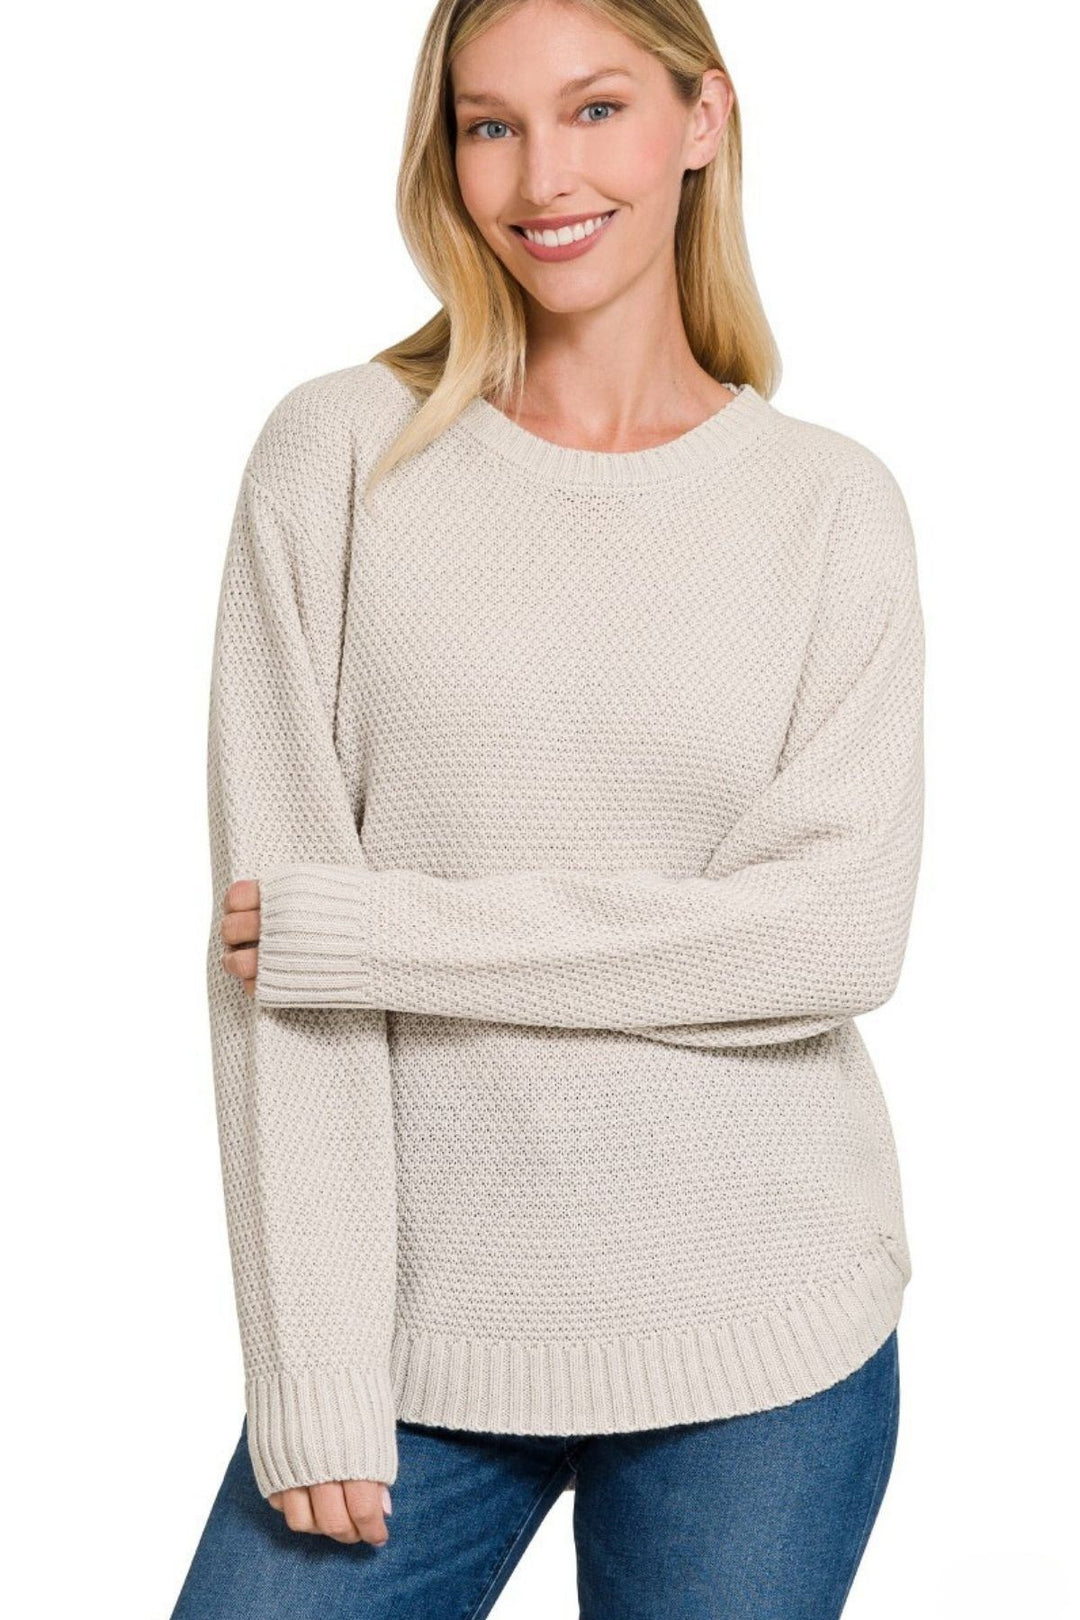 Zenana Sweater - Basics - Inspired Eye Boutique